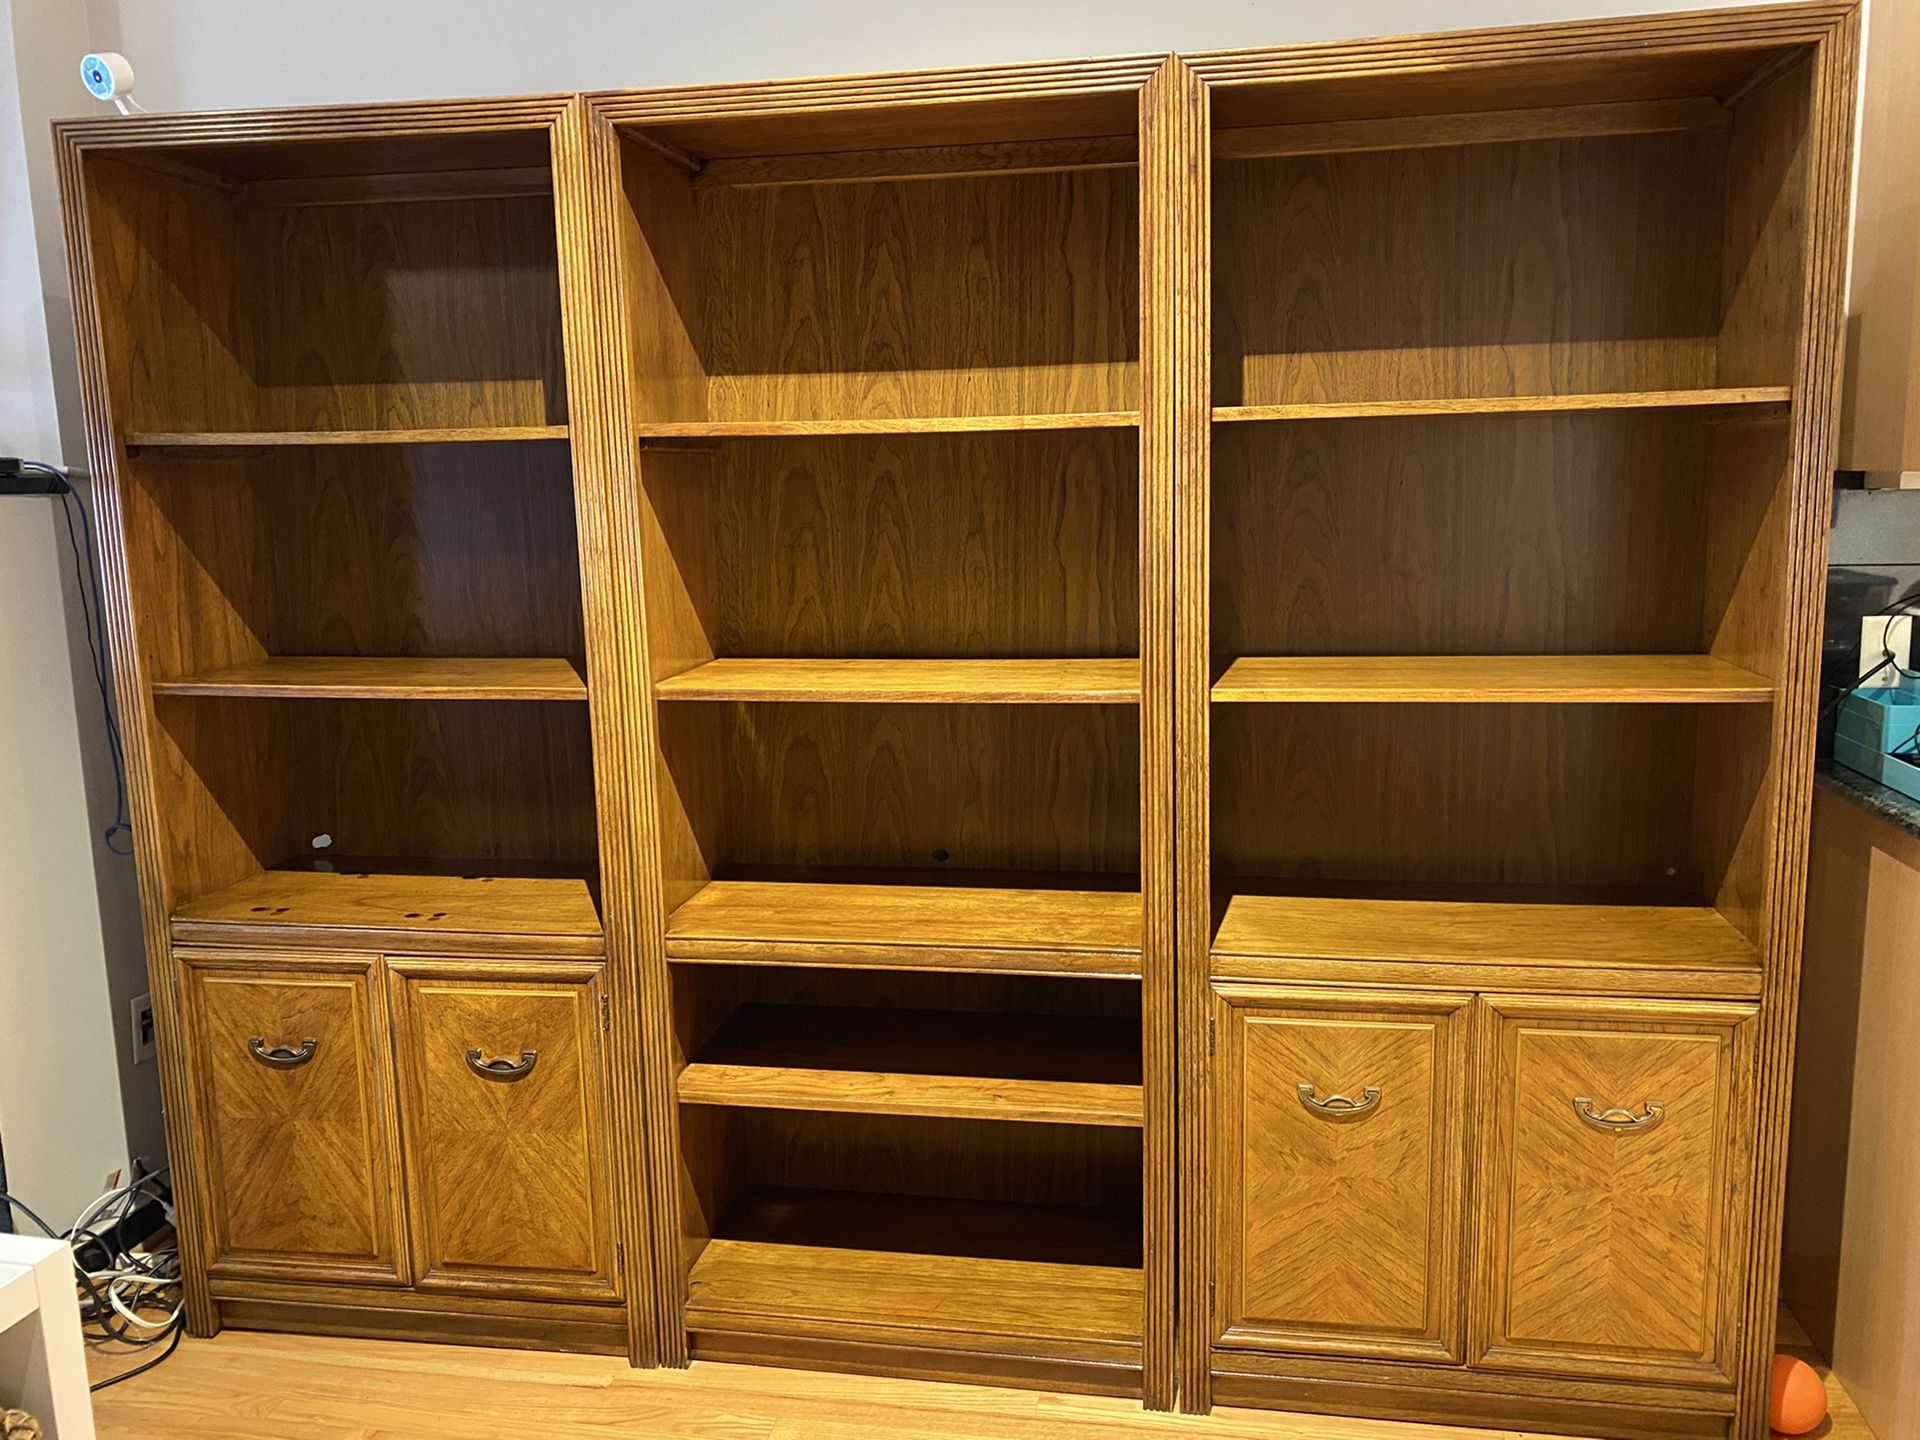 Set of wood bookshelves - $50 for all